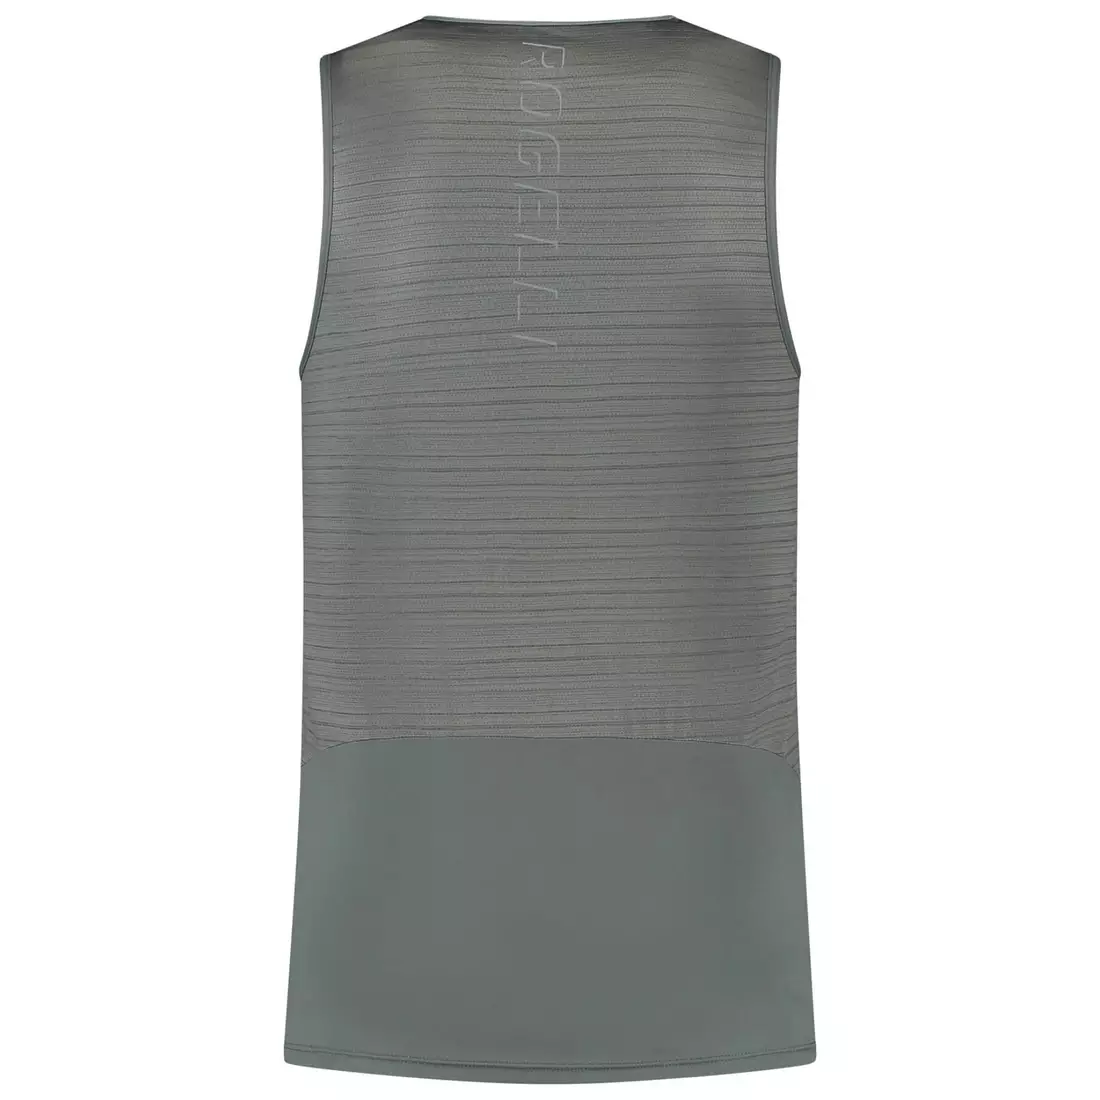 Rogelli CORE men's running vest, gray